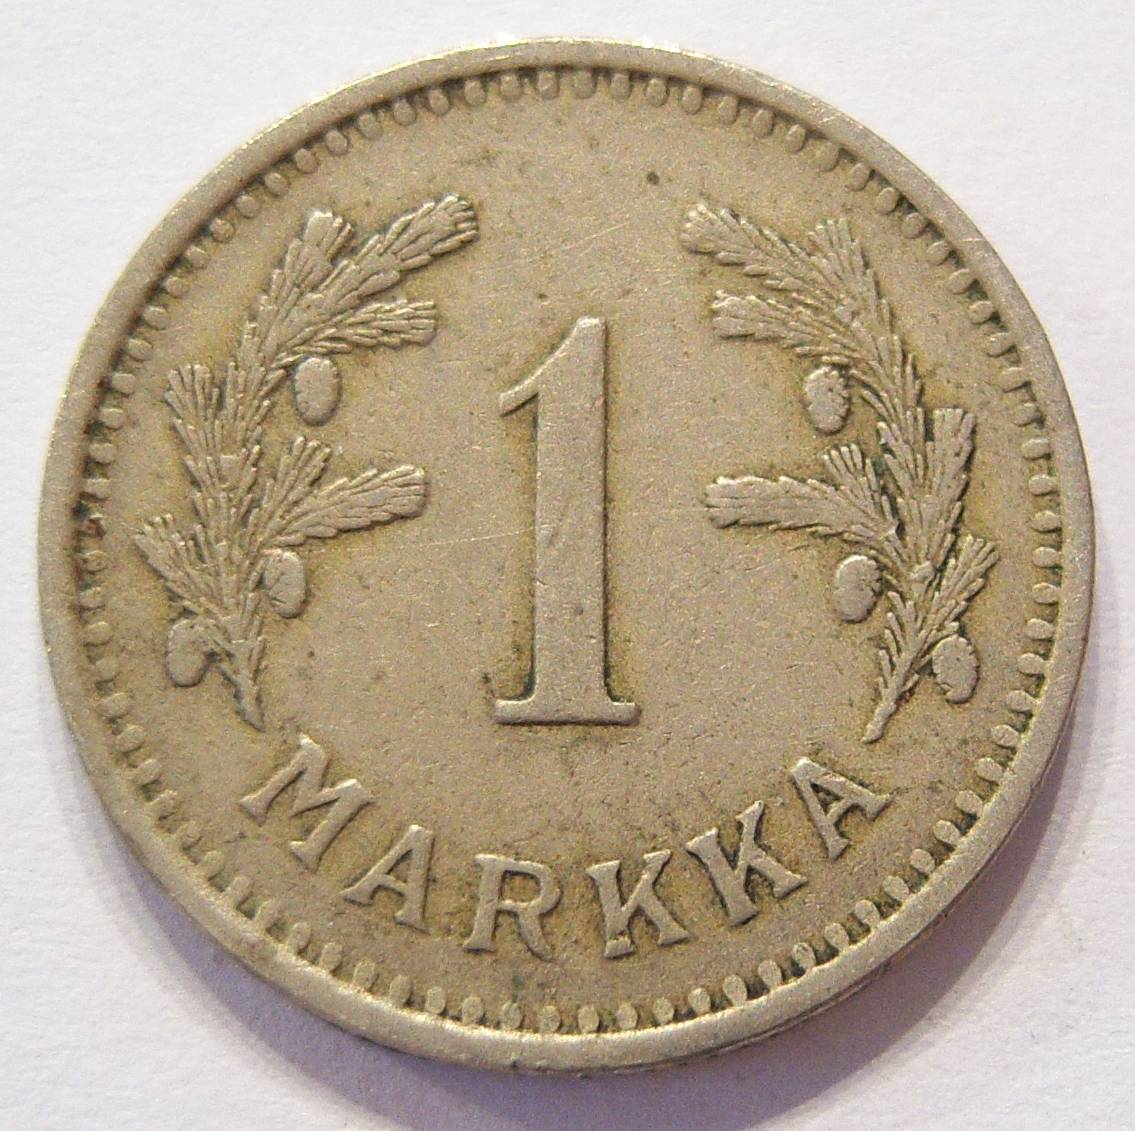  Finnland 1 Markka 1930   